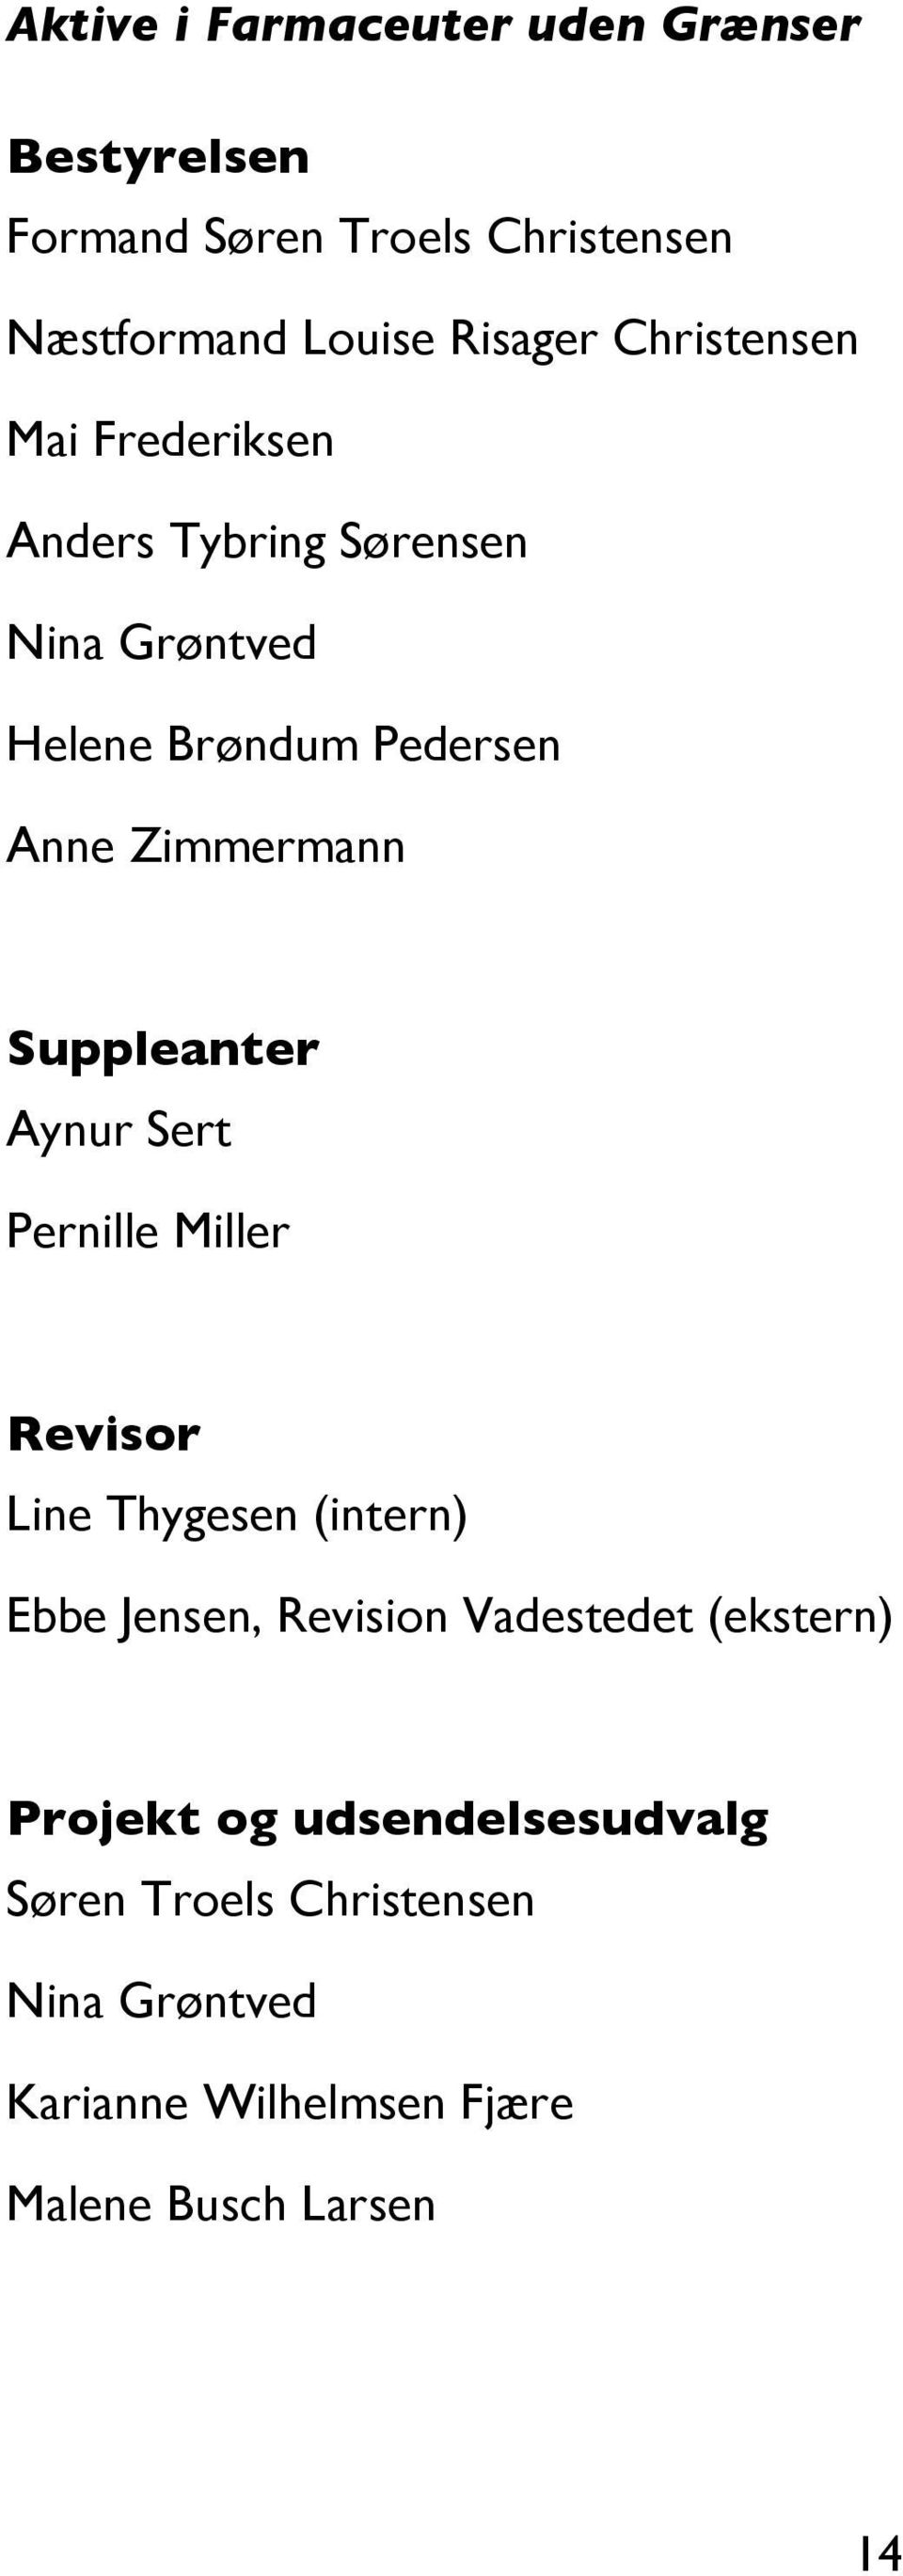 Suppleanter Aynur Sert Pernille Miller Revisor Line Thygesen (intern) Ebbe Jensen, Revision Vadestedet